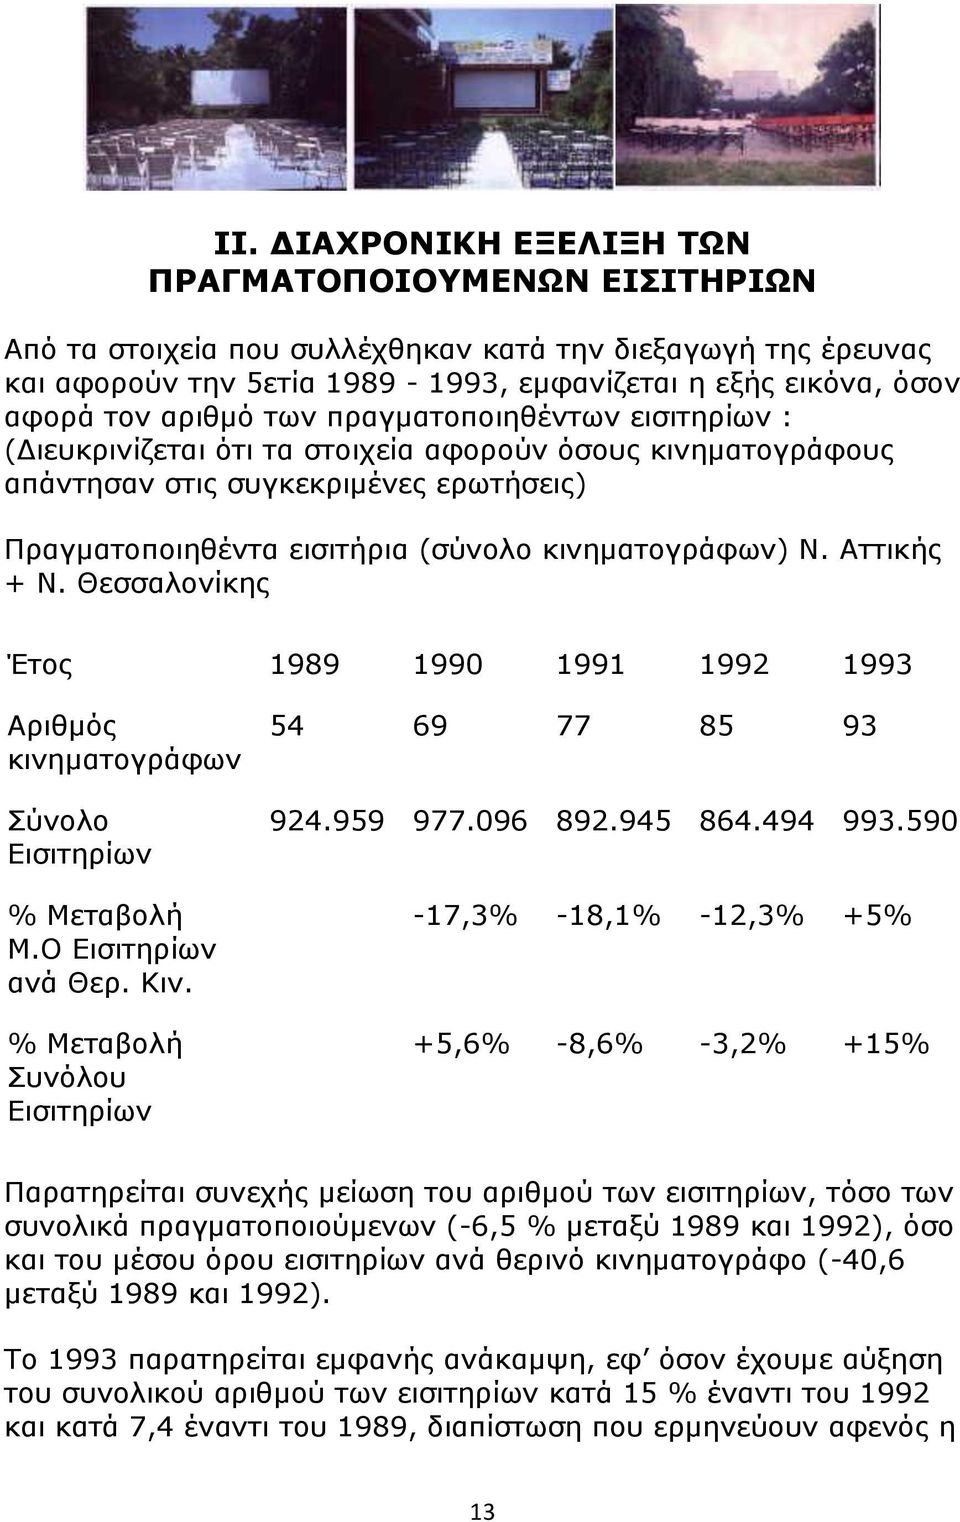 Αττικής + Ν. Θεσσαλονίκης Έτος 19 1990 1991 1992 1993 Αριθμός κινηματογράφων Εισιτηρίων % Μεταβολή Μ.Ο Εισιτηρίων ανά Θερ. Κιν. % Μεταβολή Συνόλου Εισιτηρίων 54 69 77 85 93 924.959 977.096 2.5 864.